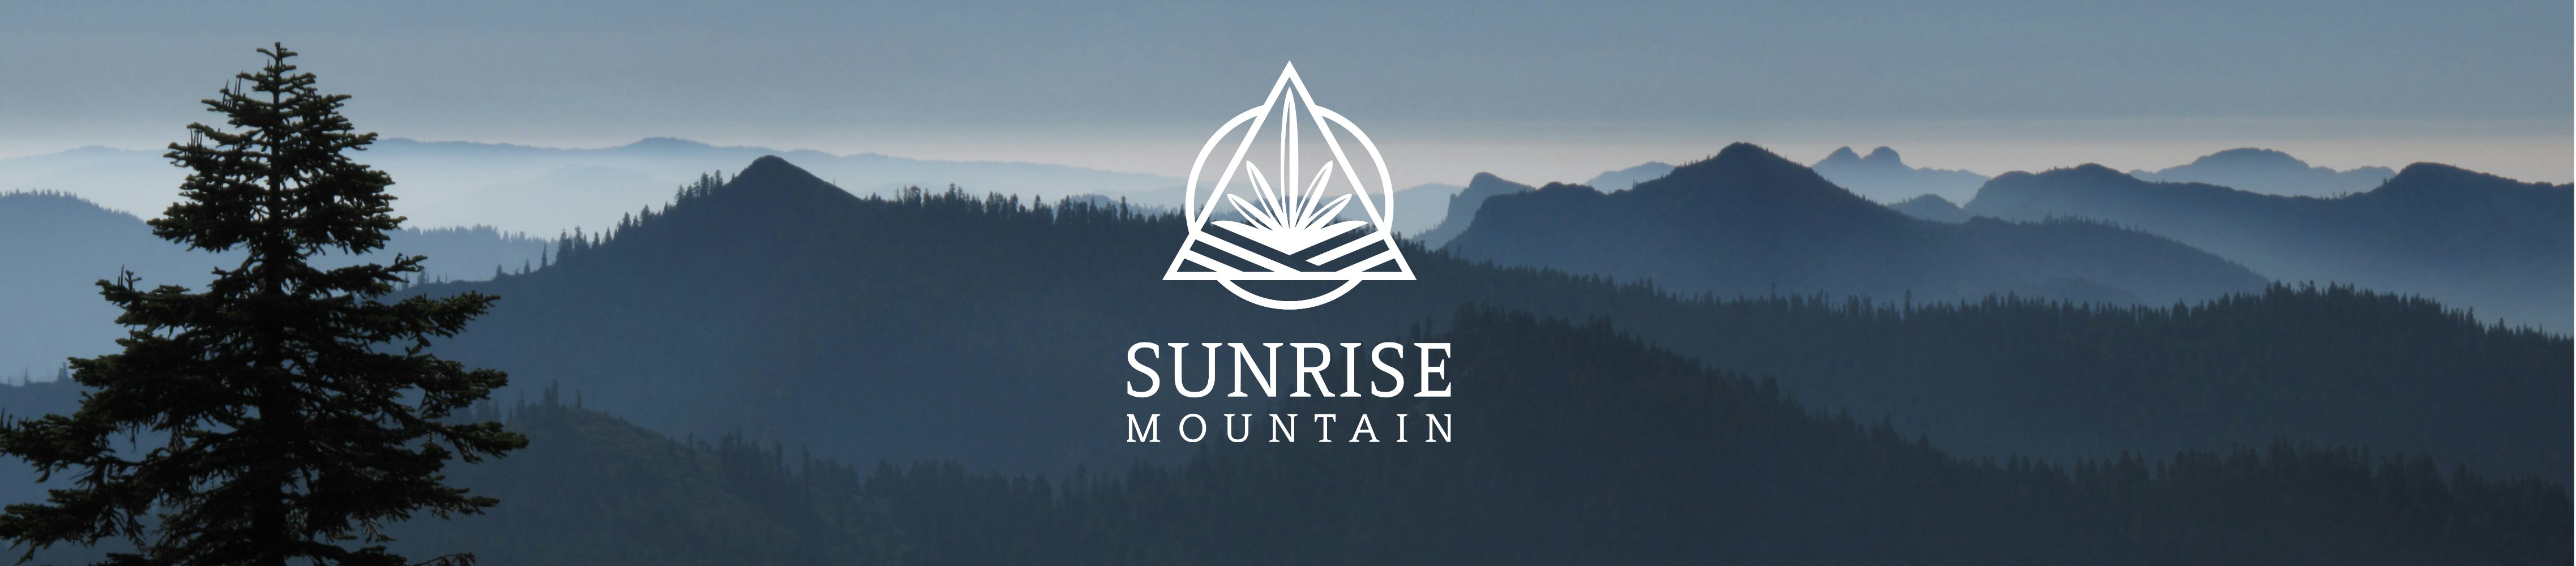 Sunrise Mountain banner